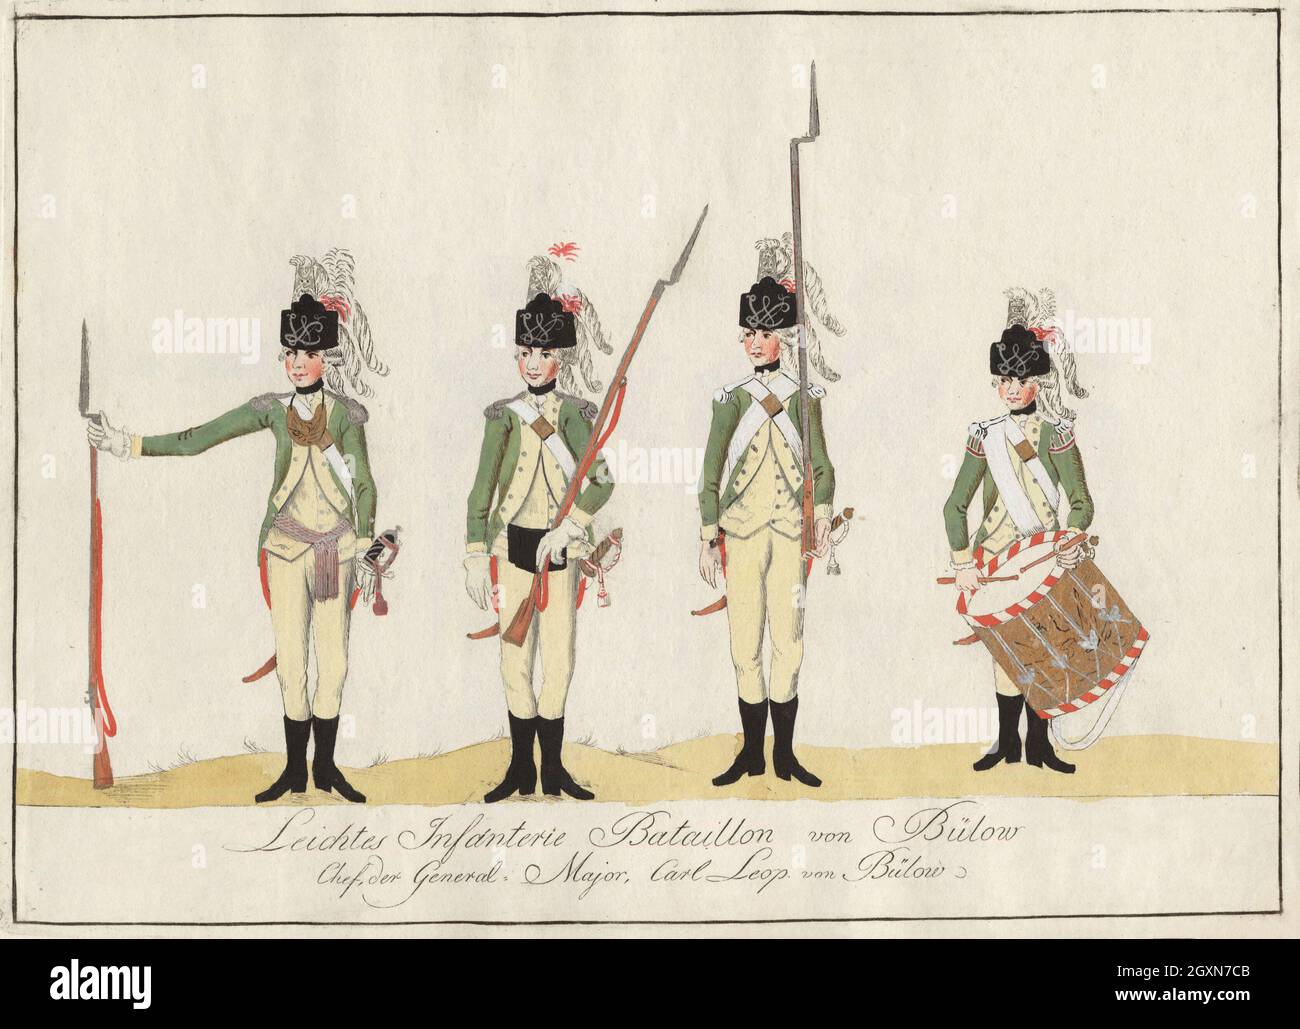 Leichtes Infanterie Bataillon von Bülow - 1784 Stock Photo